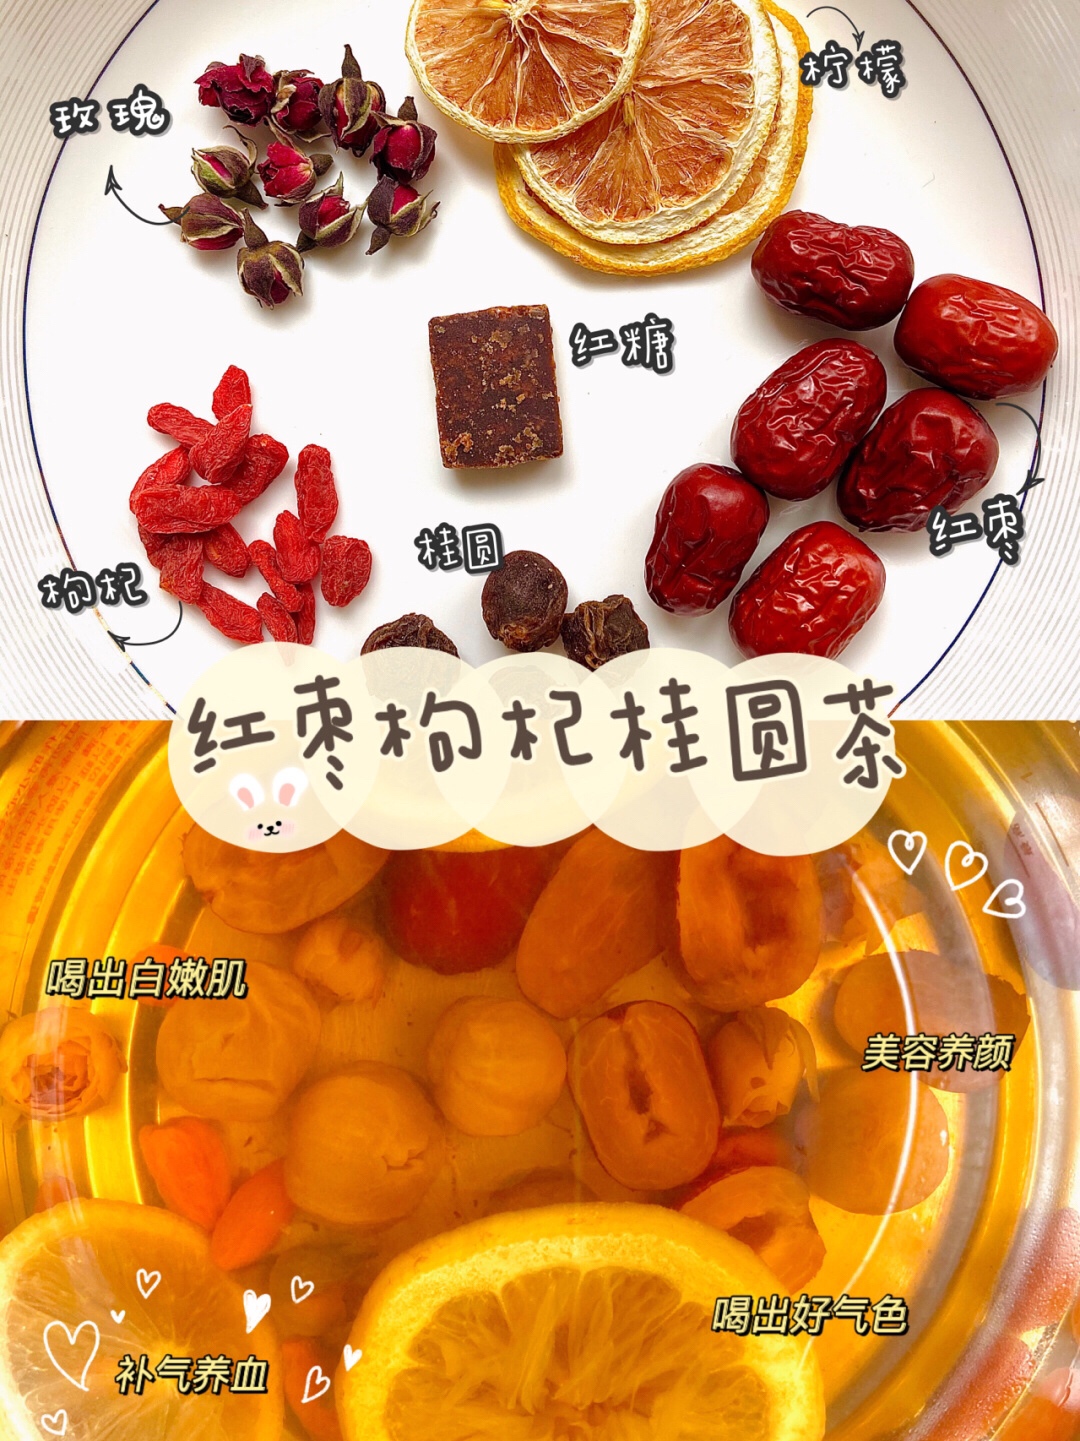 红枣枸杞桂圆养生茶的做法